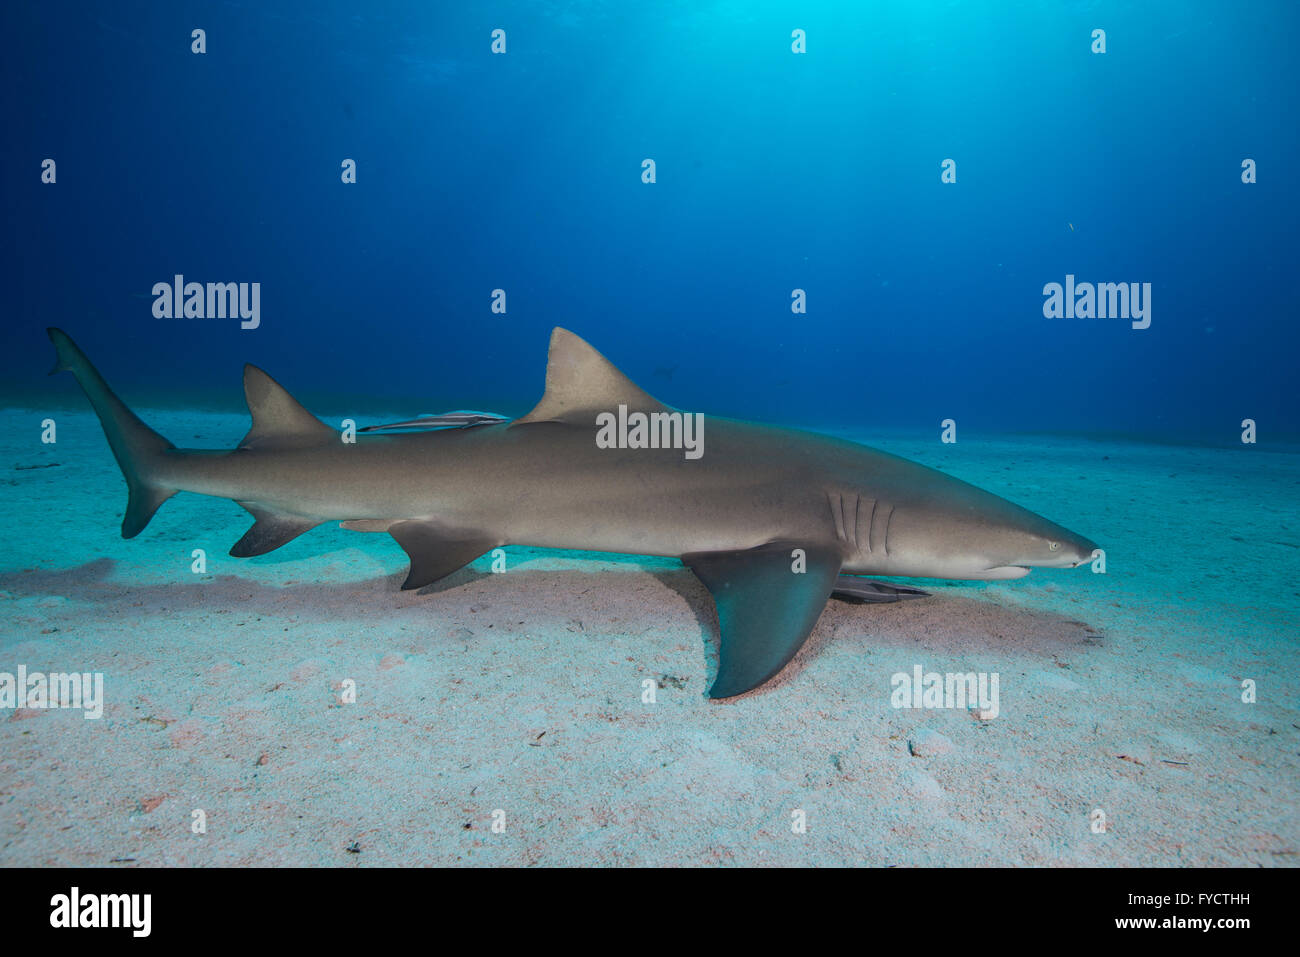 Lemon shark, Negaprion brevirostris, swimming over sand, Bahamas Stock Photo